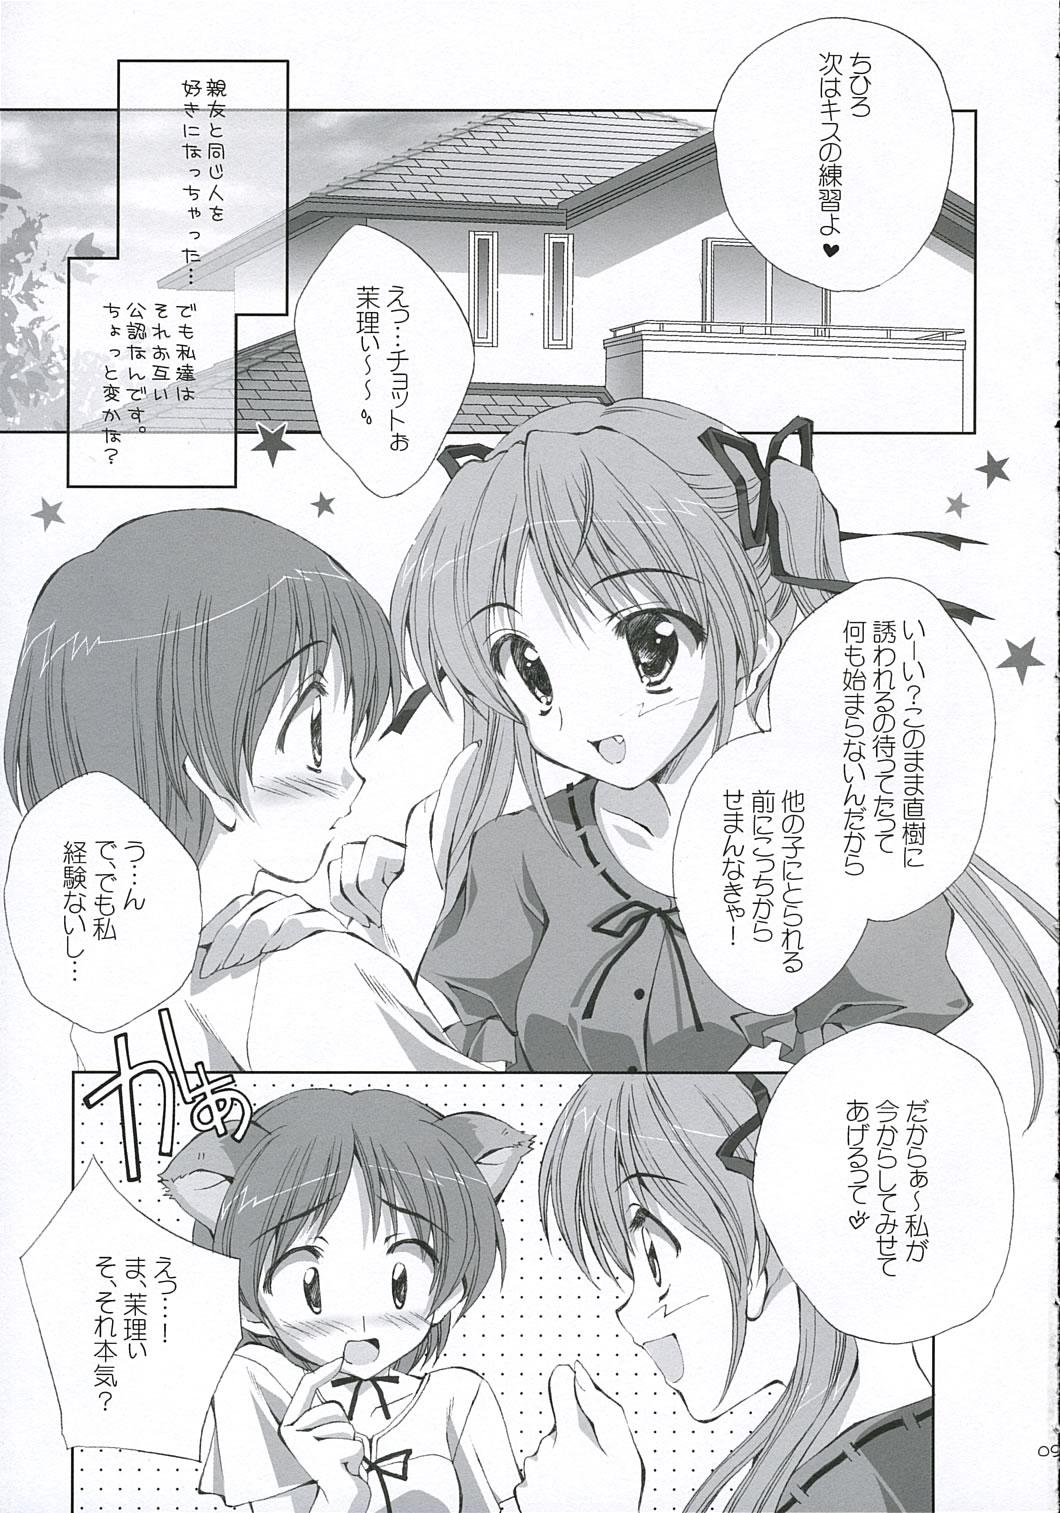 Novinhas Lovely Honey - Tsuki wa higashi ni hi wa nishi ni Blowjob Contest - Page 8